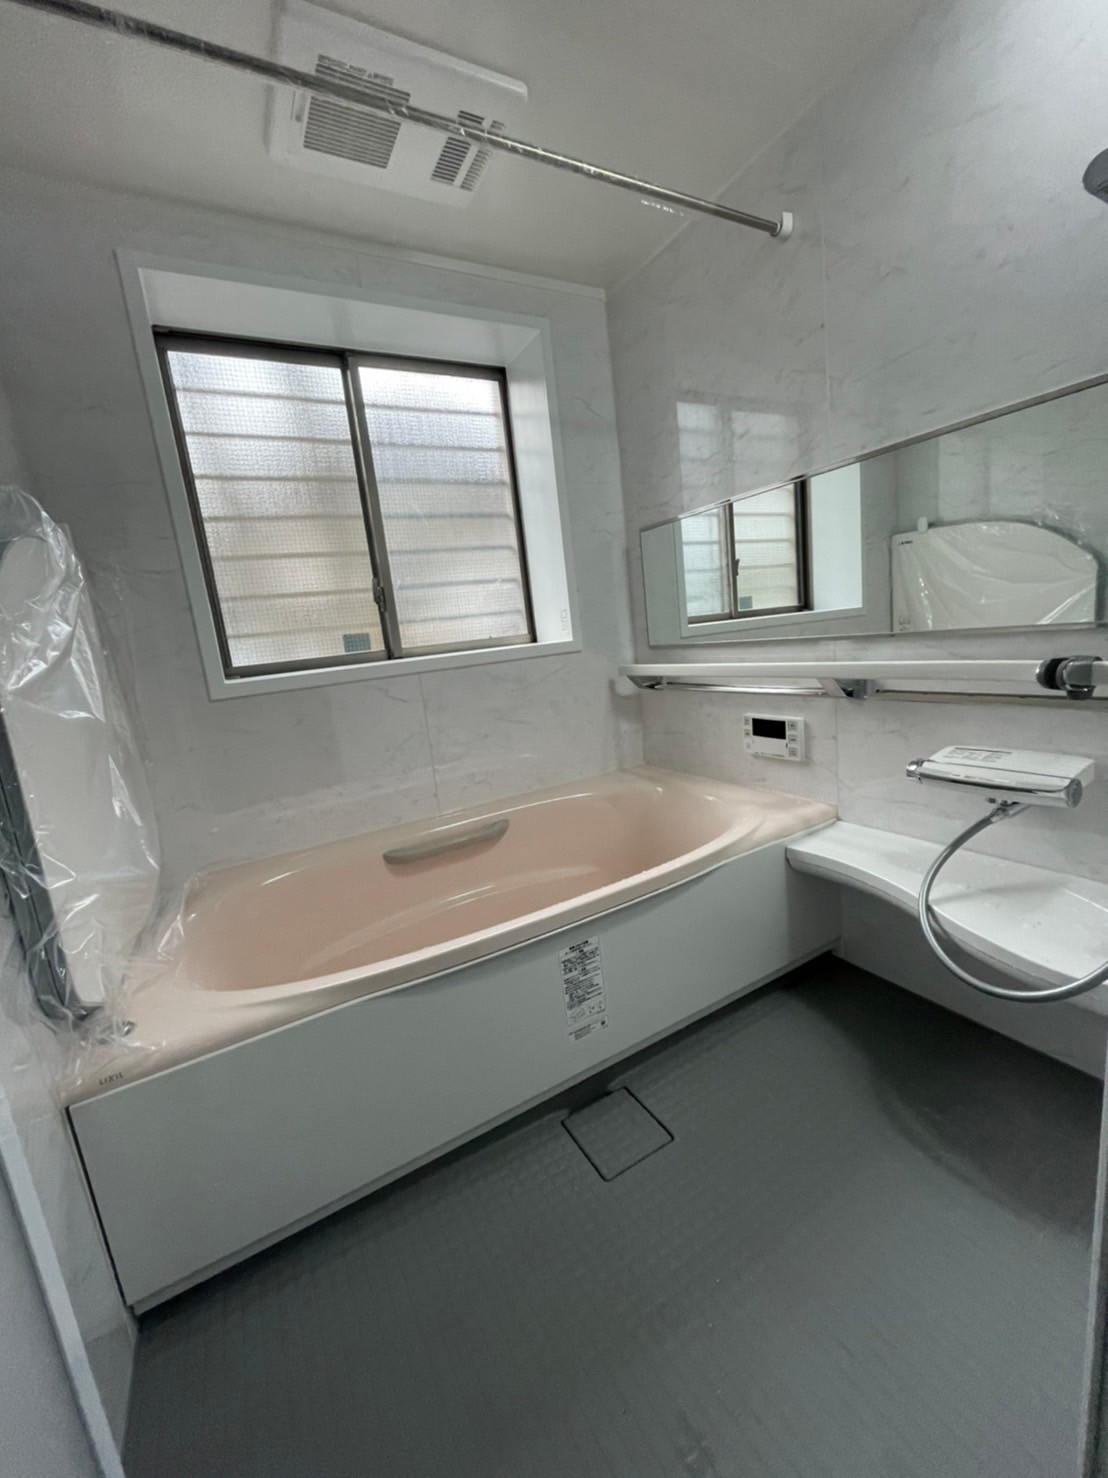 八尾市でタイルの浴室から、ユニットバスに取り替えさせて頂きました